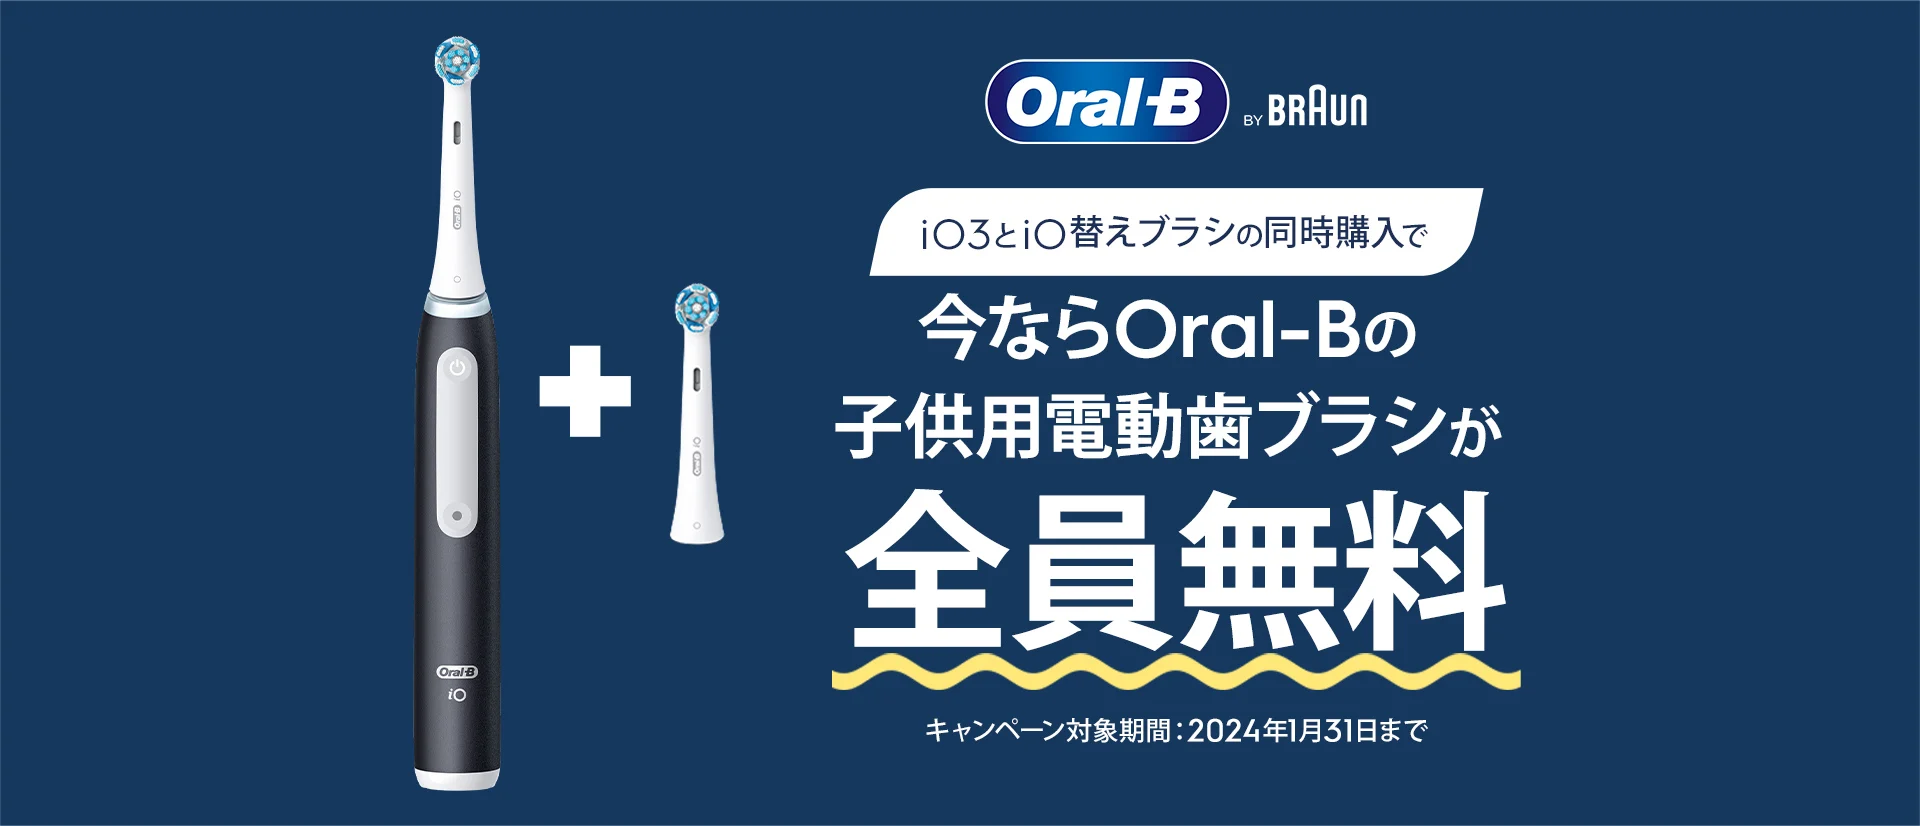 年末年始は、Oral-Bで家族と一緒に健康的な歯磨き習慣を。iO3とiO替えブラシの同時購入で。今ならOral-Bの子供用電動歯ブラシが全員無料。キャンペーン対象期間：2024年1月31日まで。 